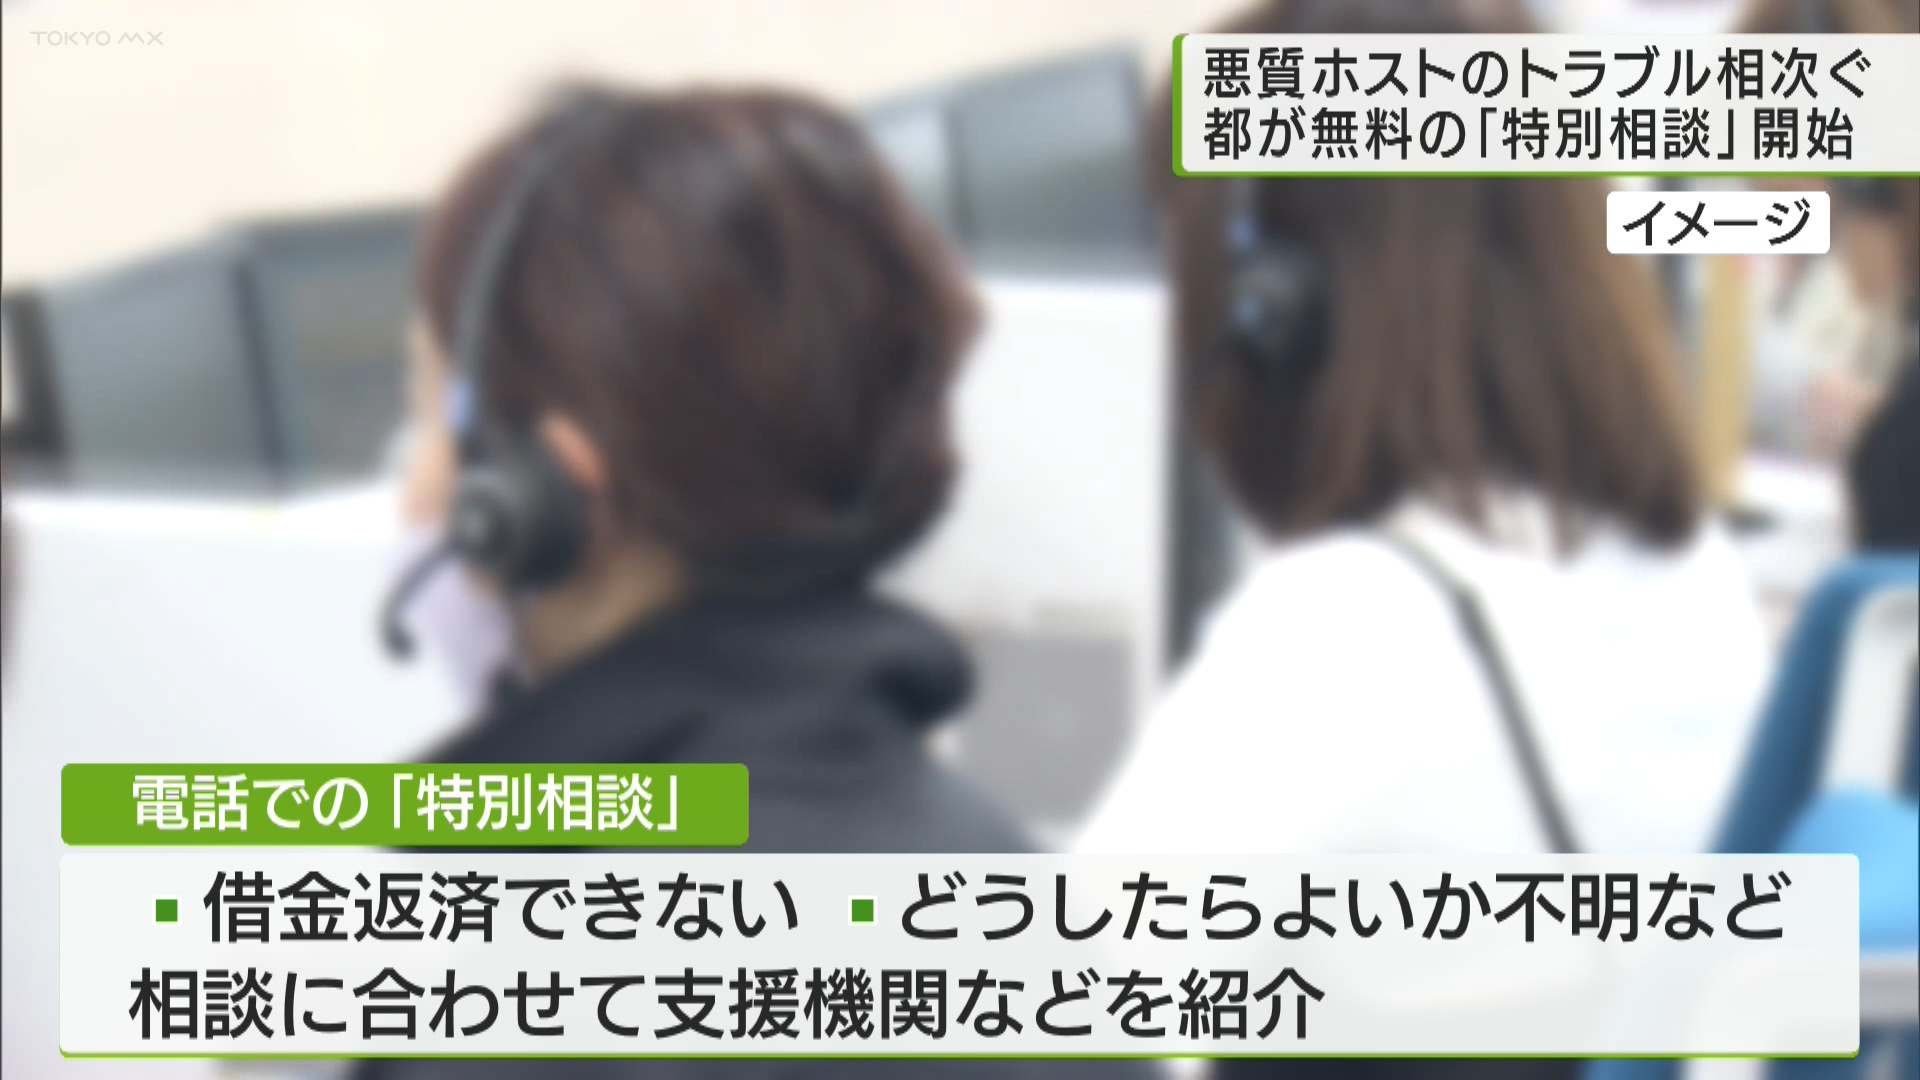 悪質なホストクラブを利用した女性があとから高額な料金を請求され、トラブルに巻き込まれる被害が相次いでいることを受け、東京都は12月11日から無料で電話での「特別相談」を始めました。